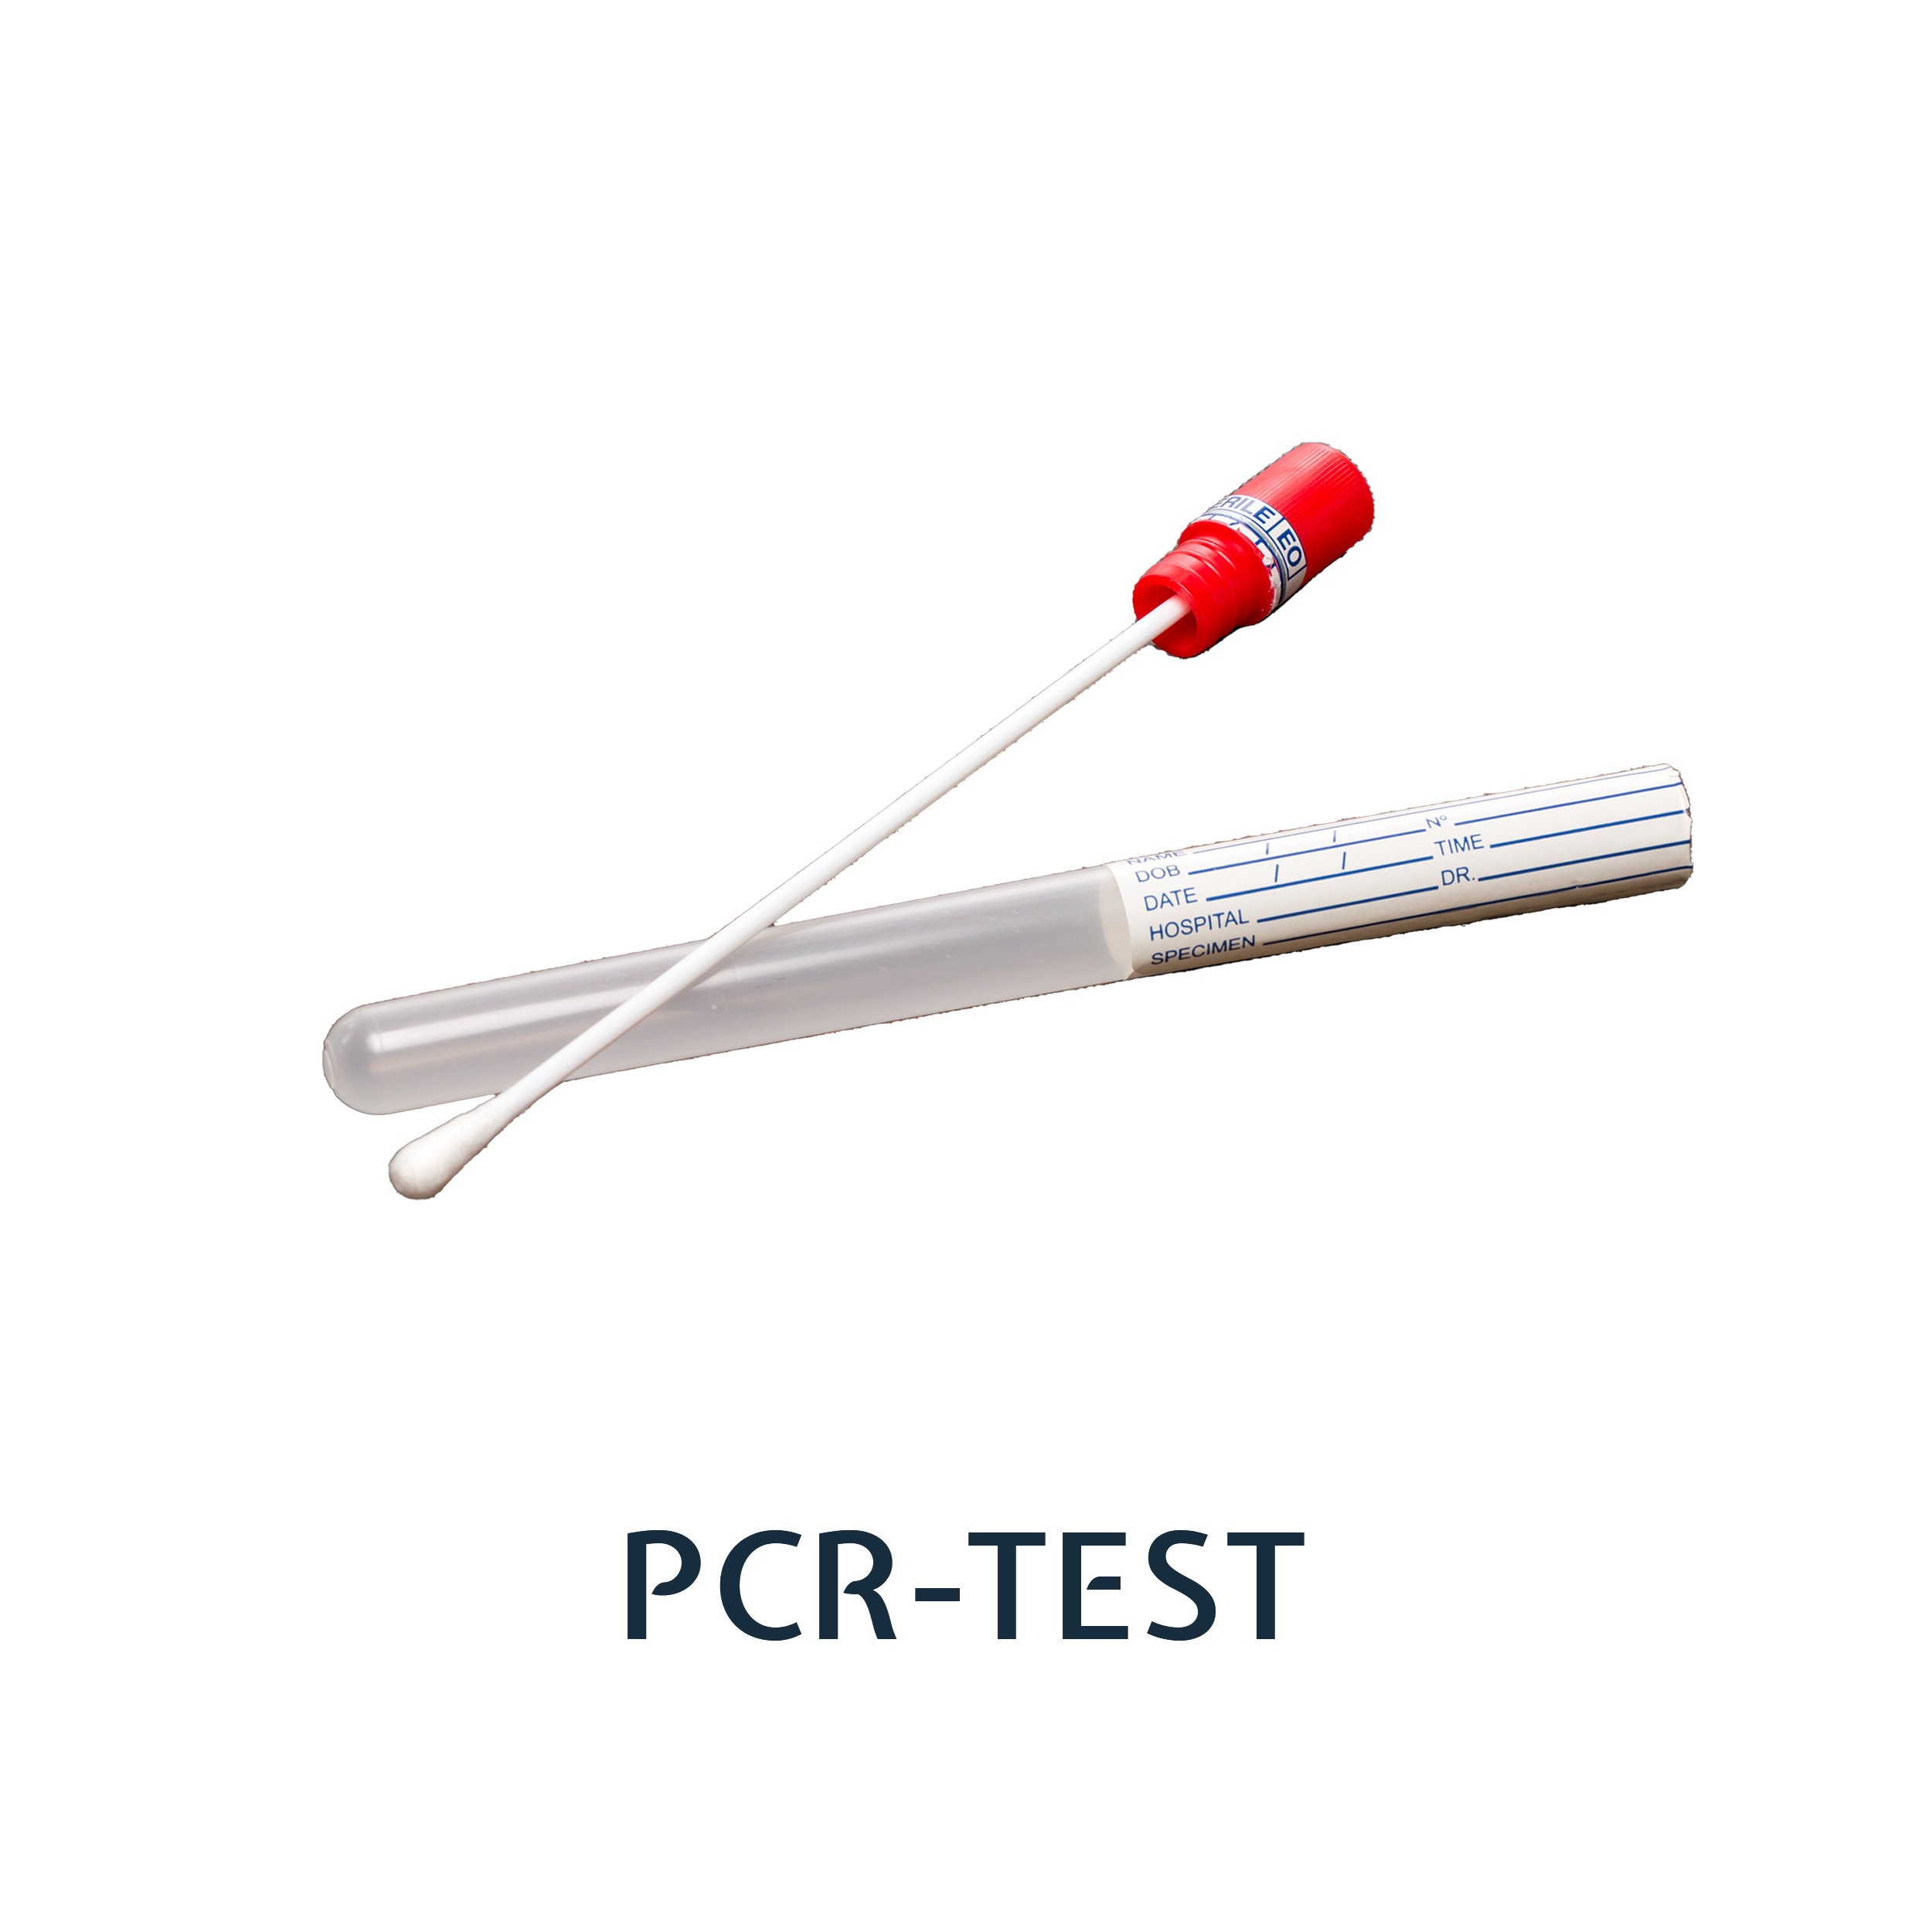 pcr-test-portfolio